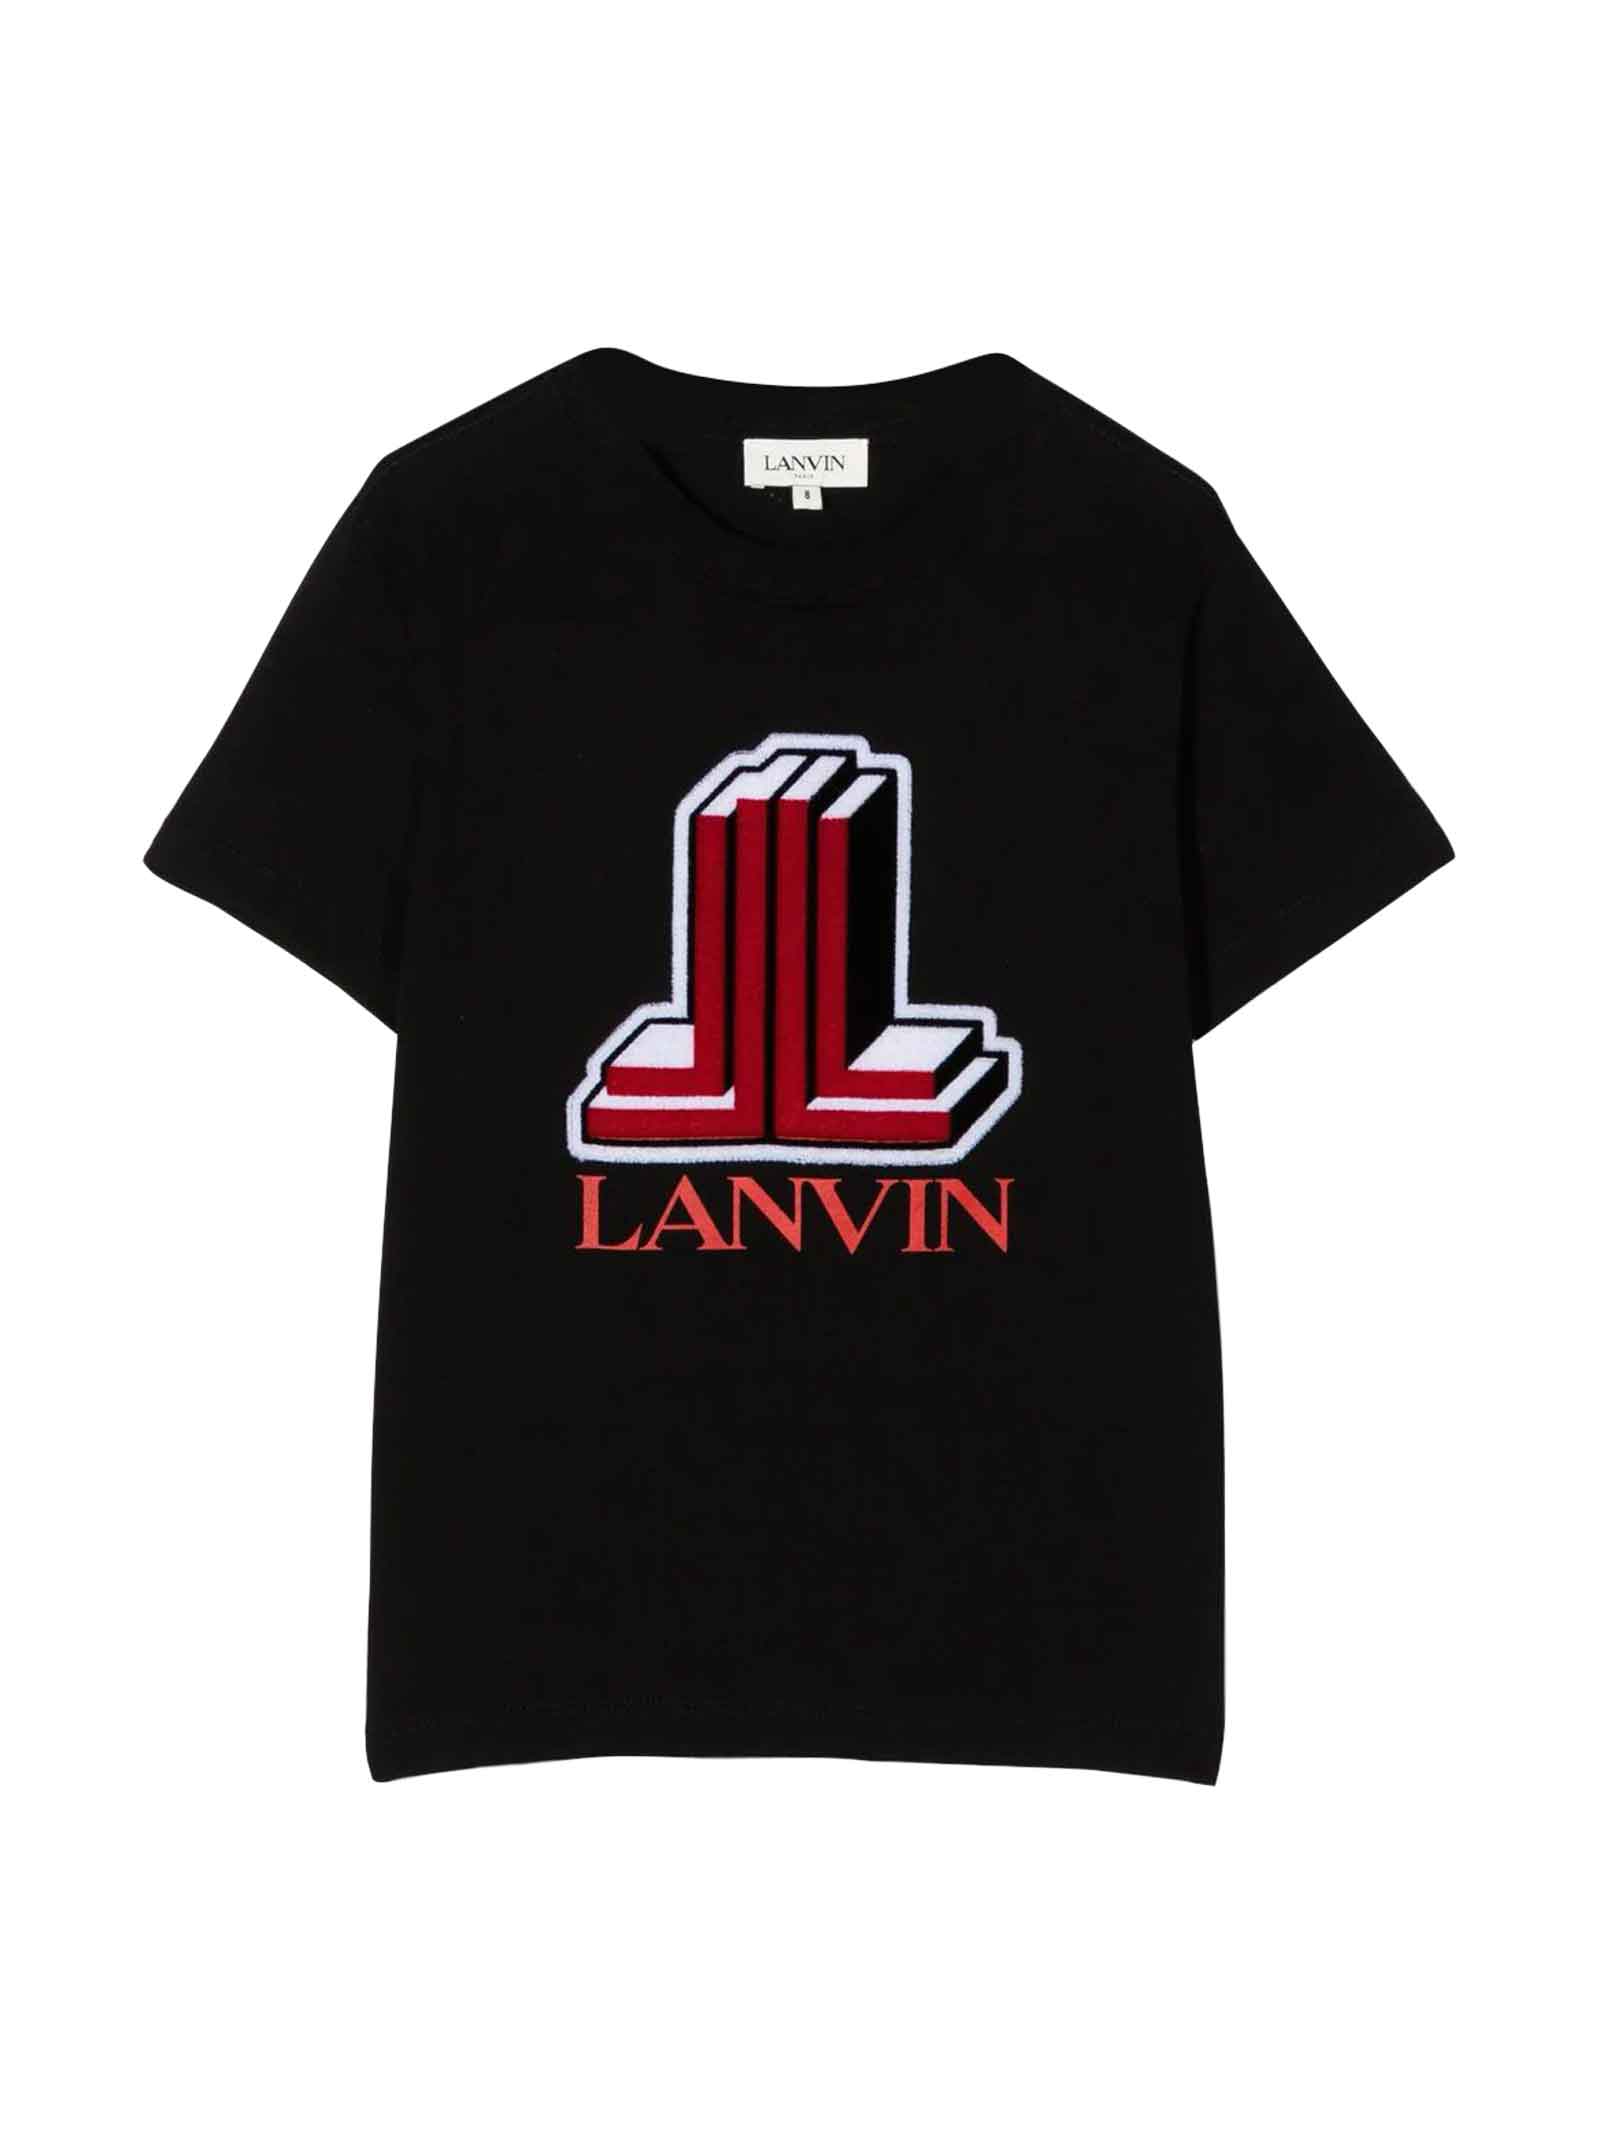 Lanvin Black T-shirt Unisex